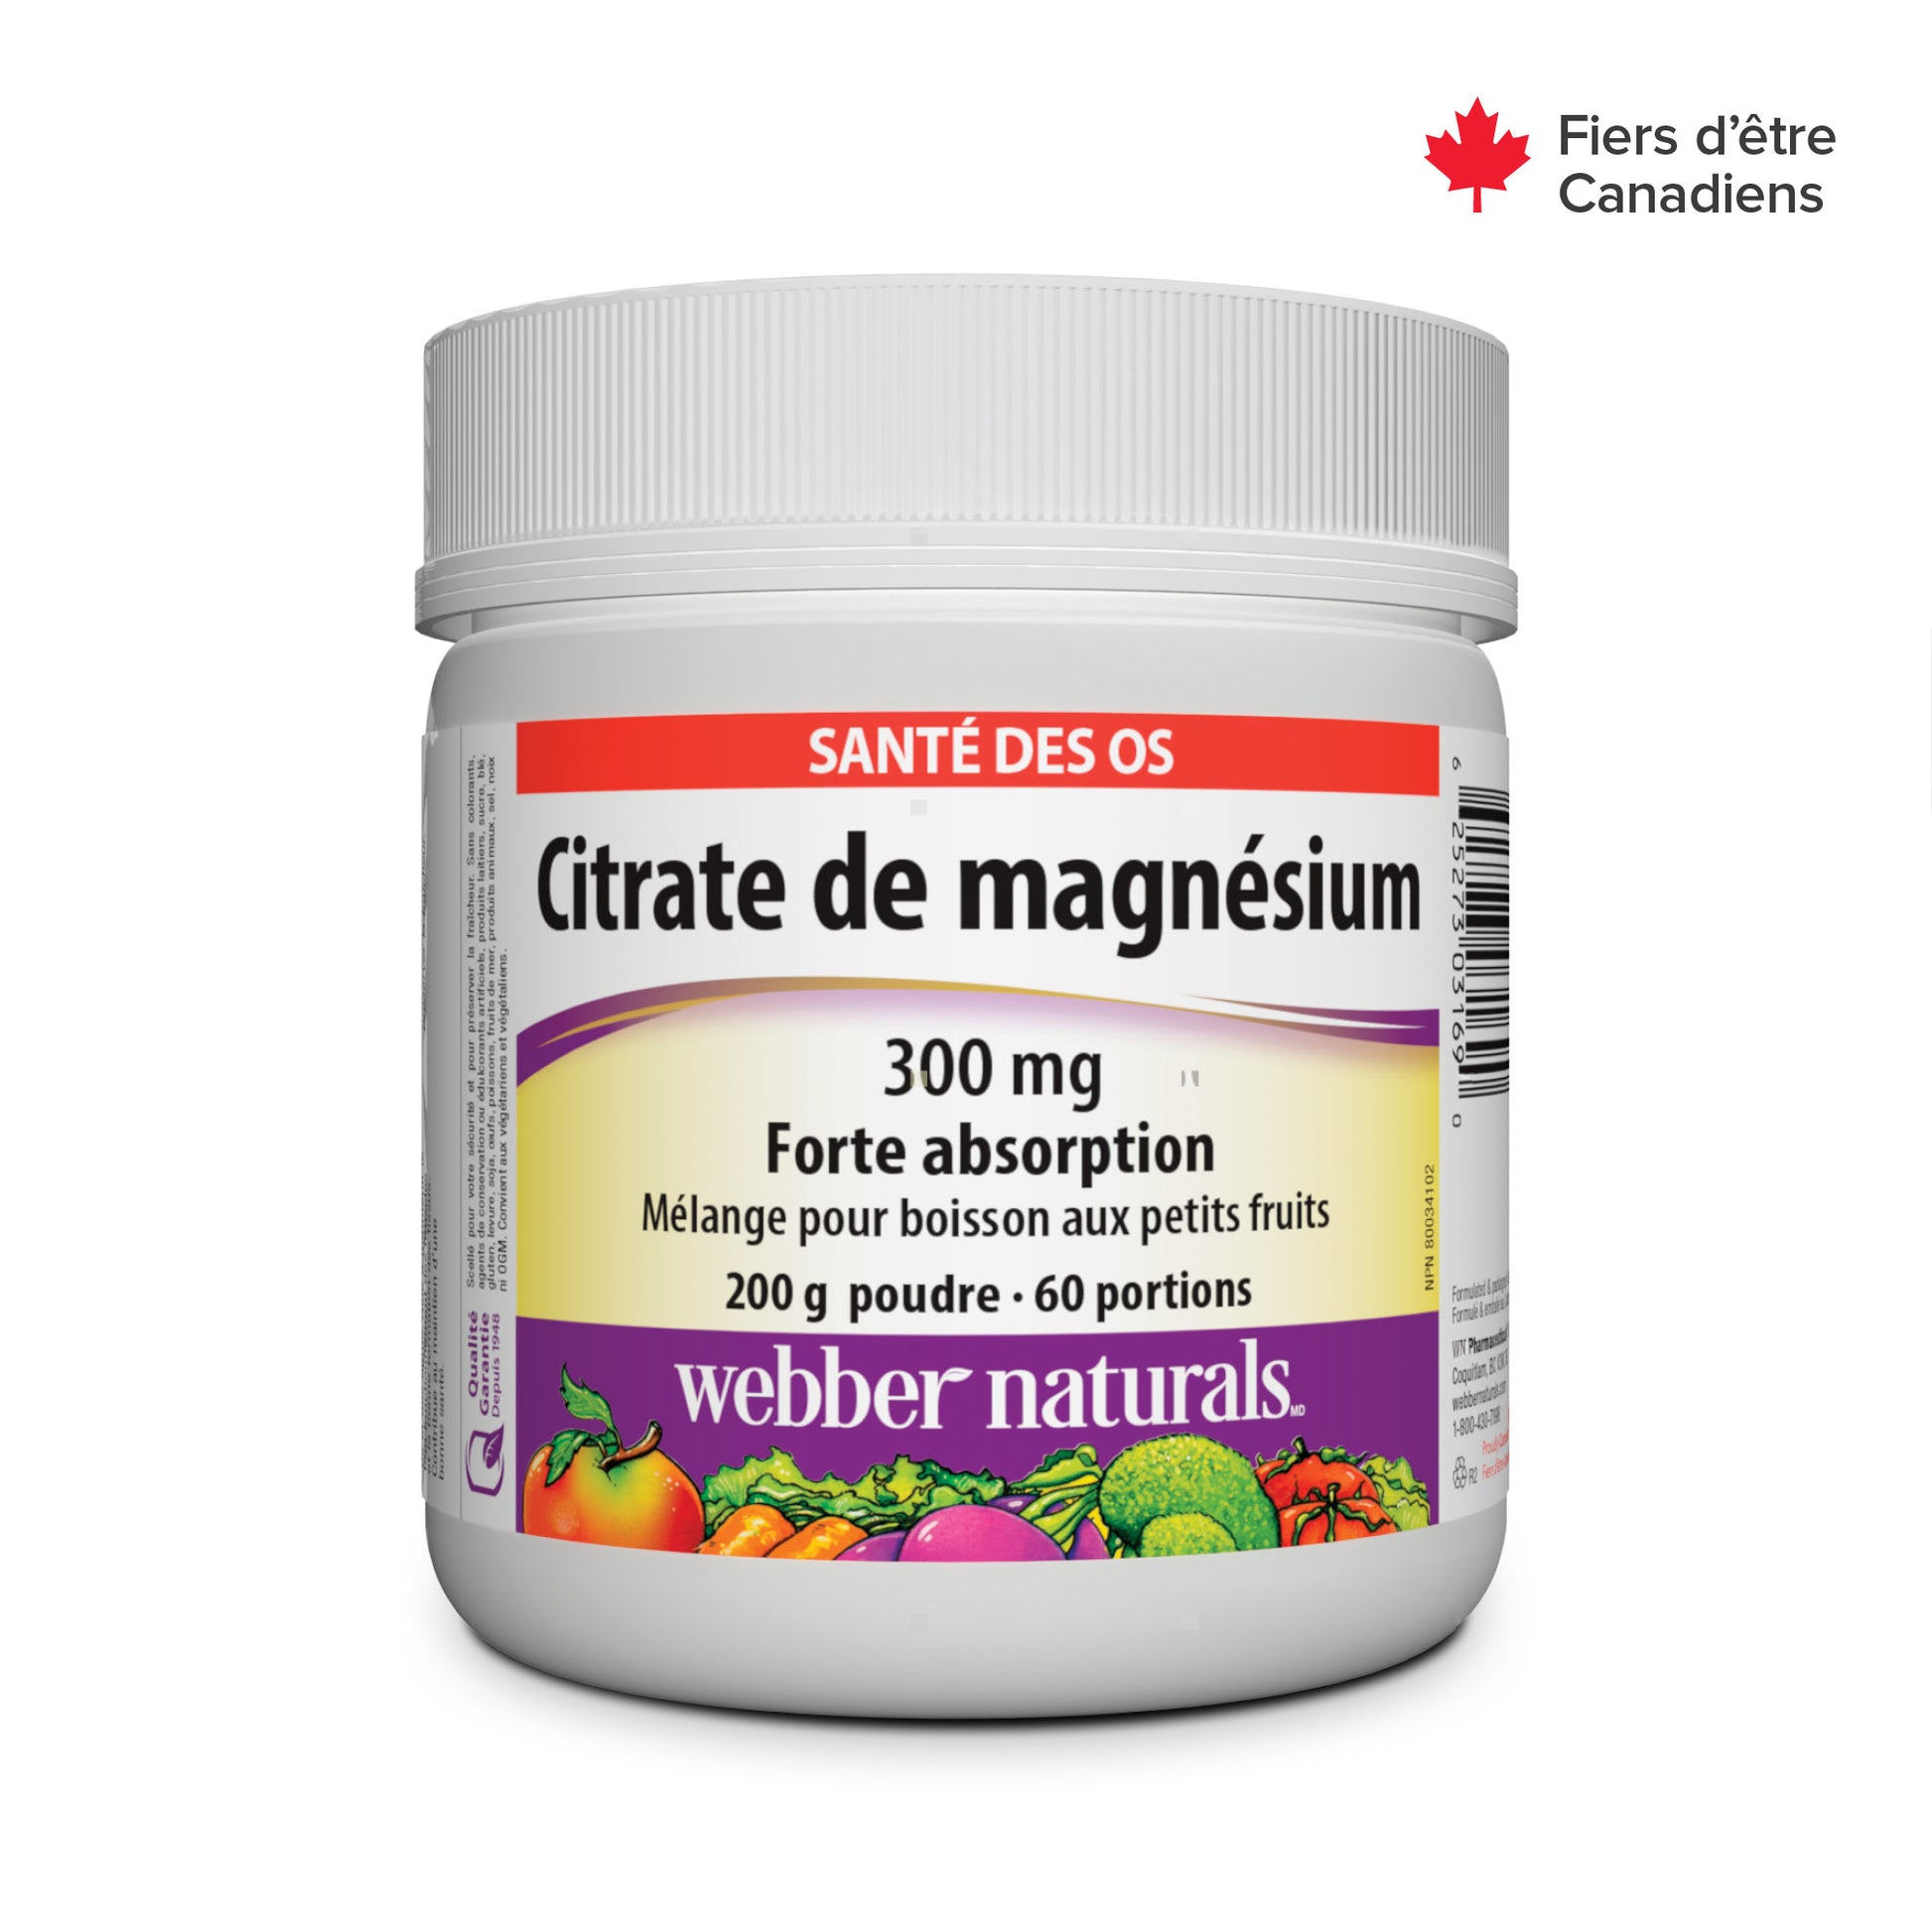 Citrate de magnésium Forte absorption 300 mg petits fruits for Webber Naturals|v|hi-res|WN3169